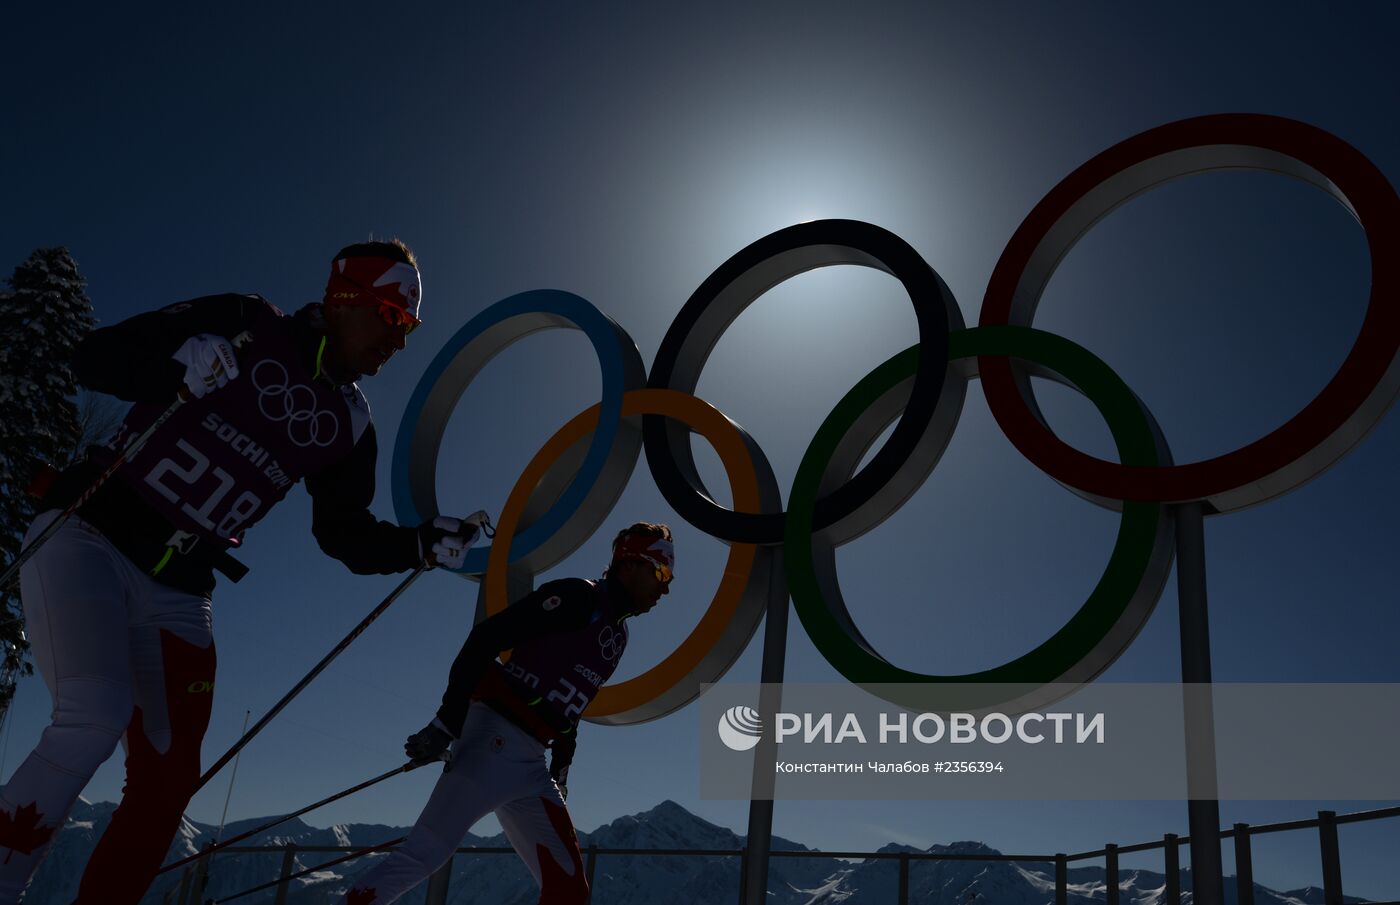 Олимпийские игры в Сочи. 3 дня до старта